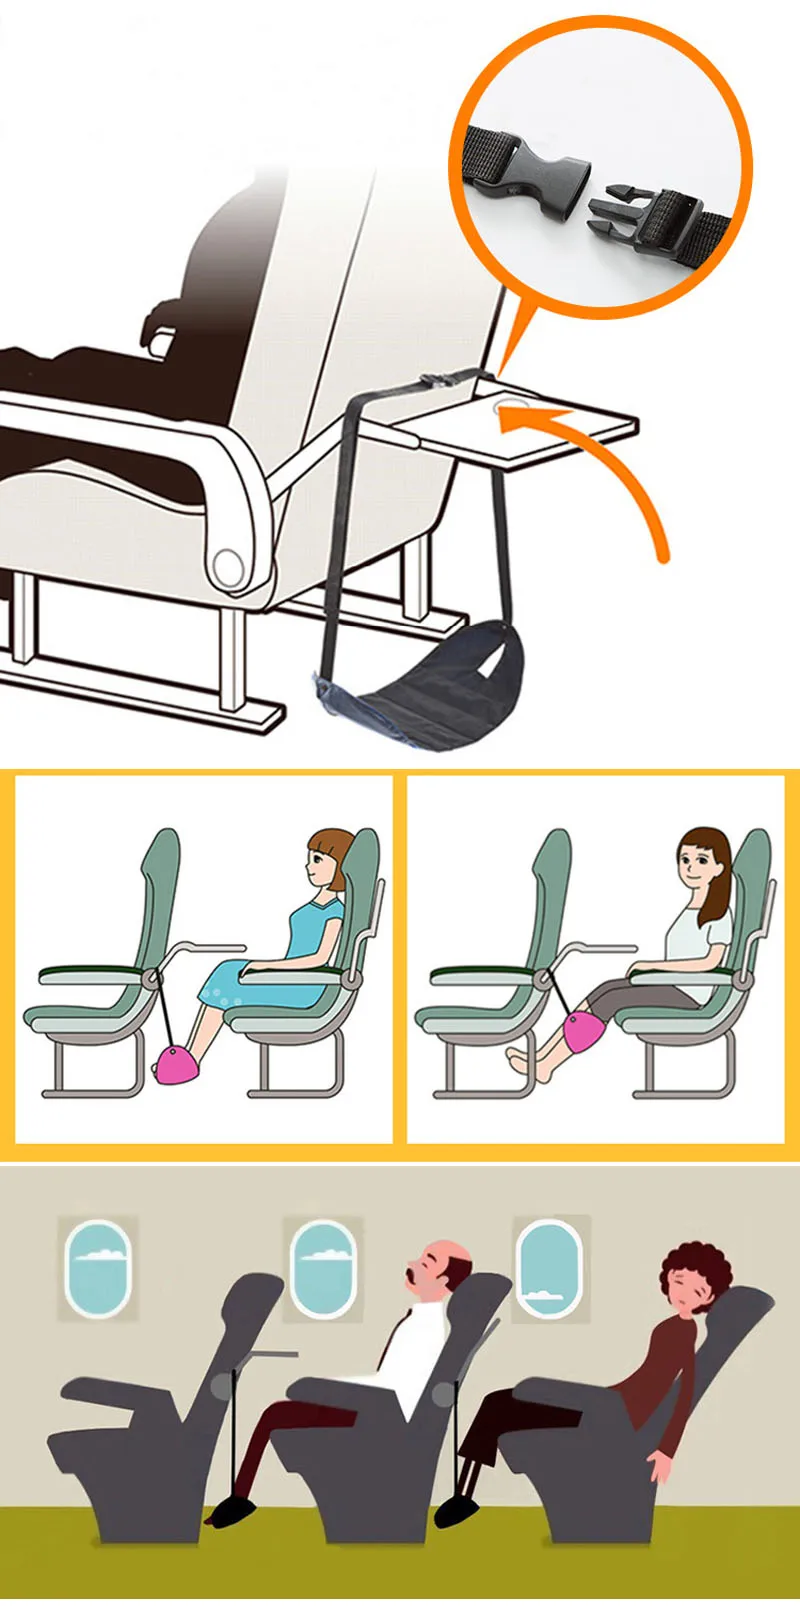 Аксессуары для самолетов для путешествий авиационные сиденья для ног портативная Регулируемая подставка для ног для путешествий ZhanBag 212